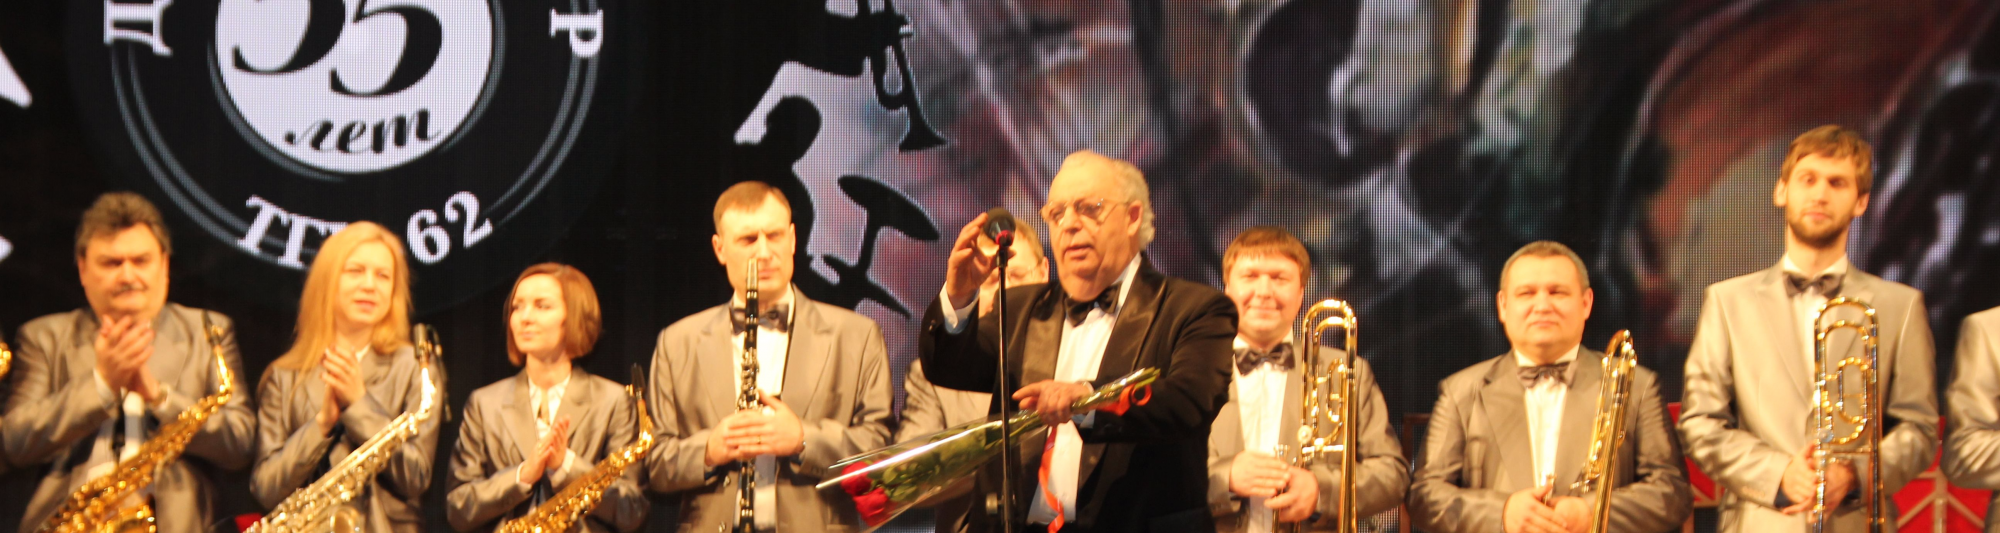 Председатель Думы Сергей Панов поздравил муниципальный джаз-оркестр «ТГУ-62» с 55-летием